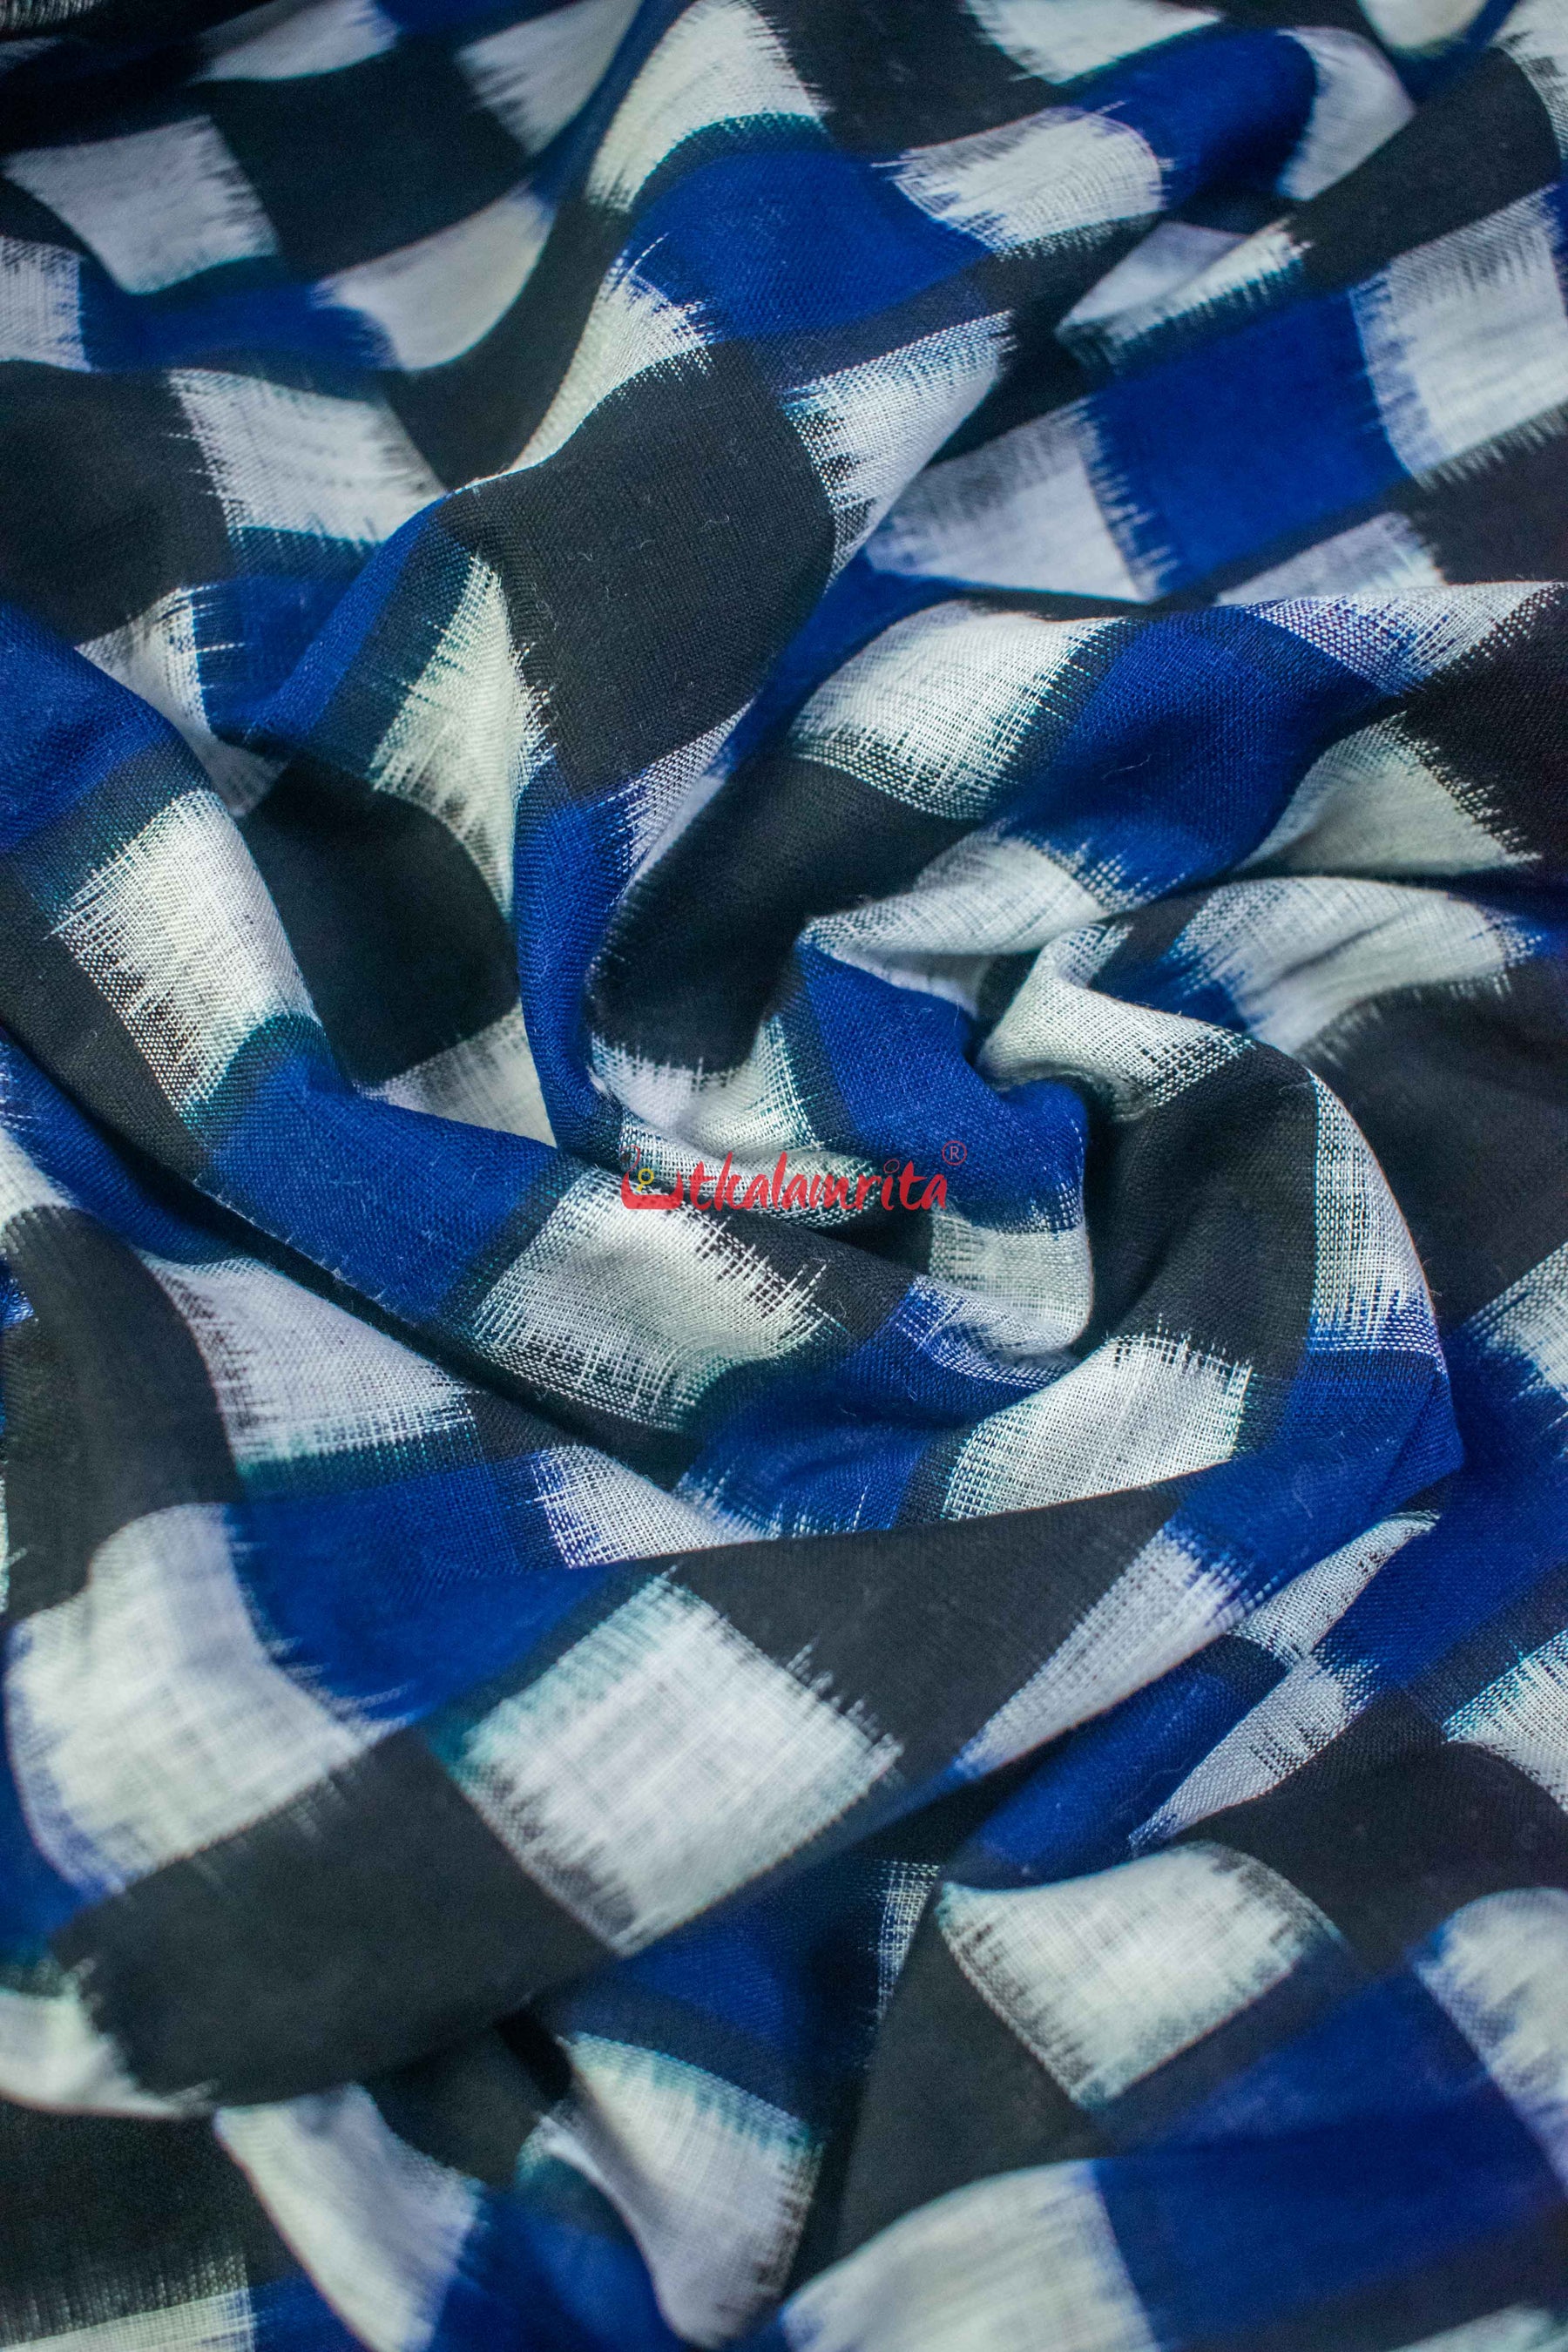 Blue Black 37 Kuthi (Fabric)